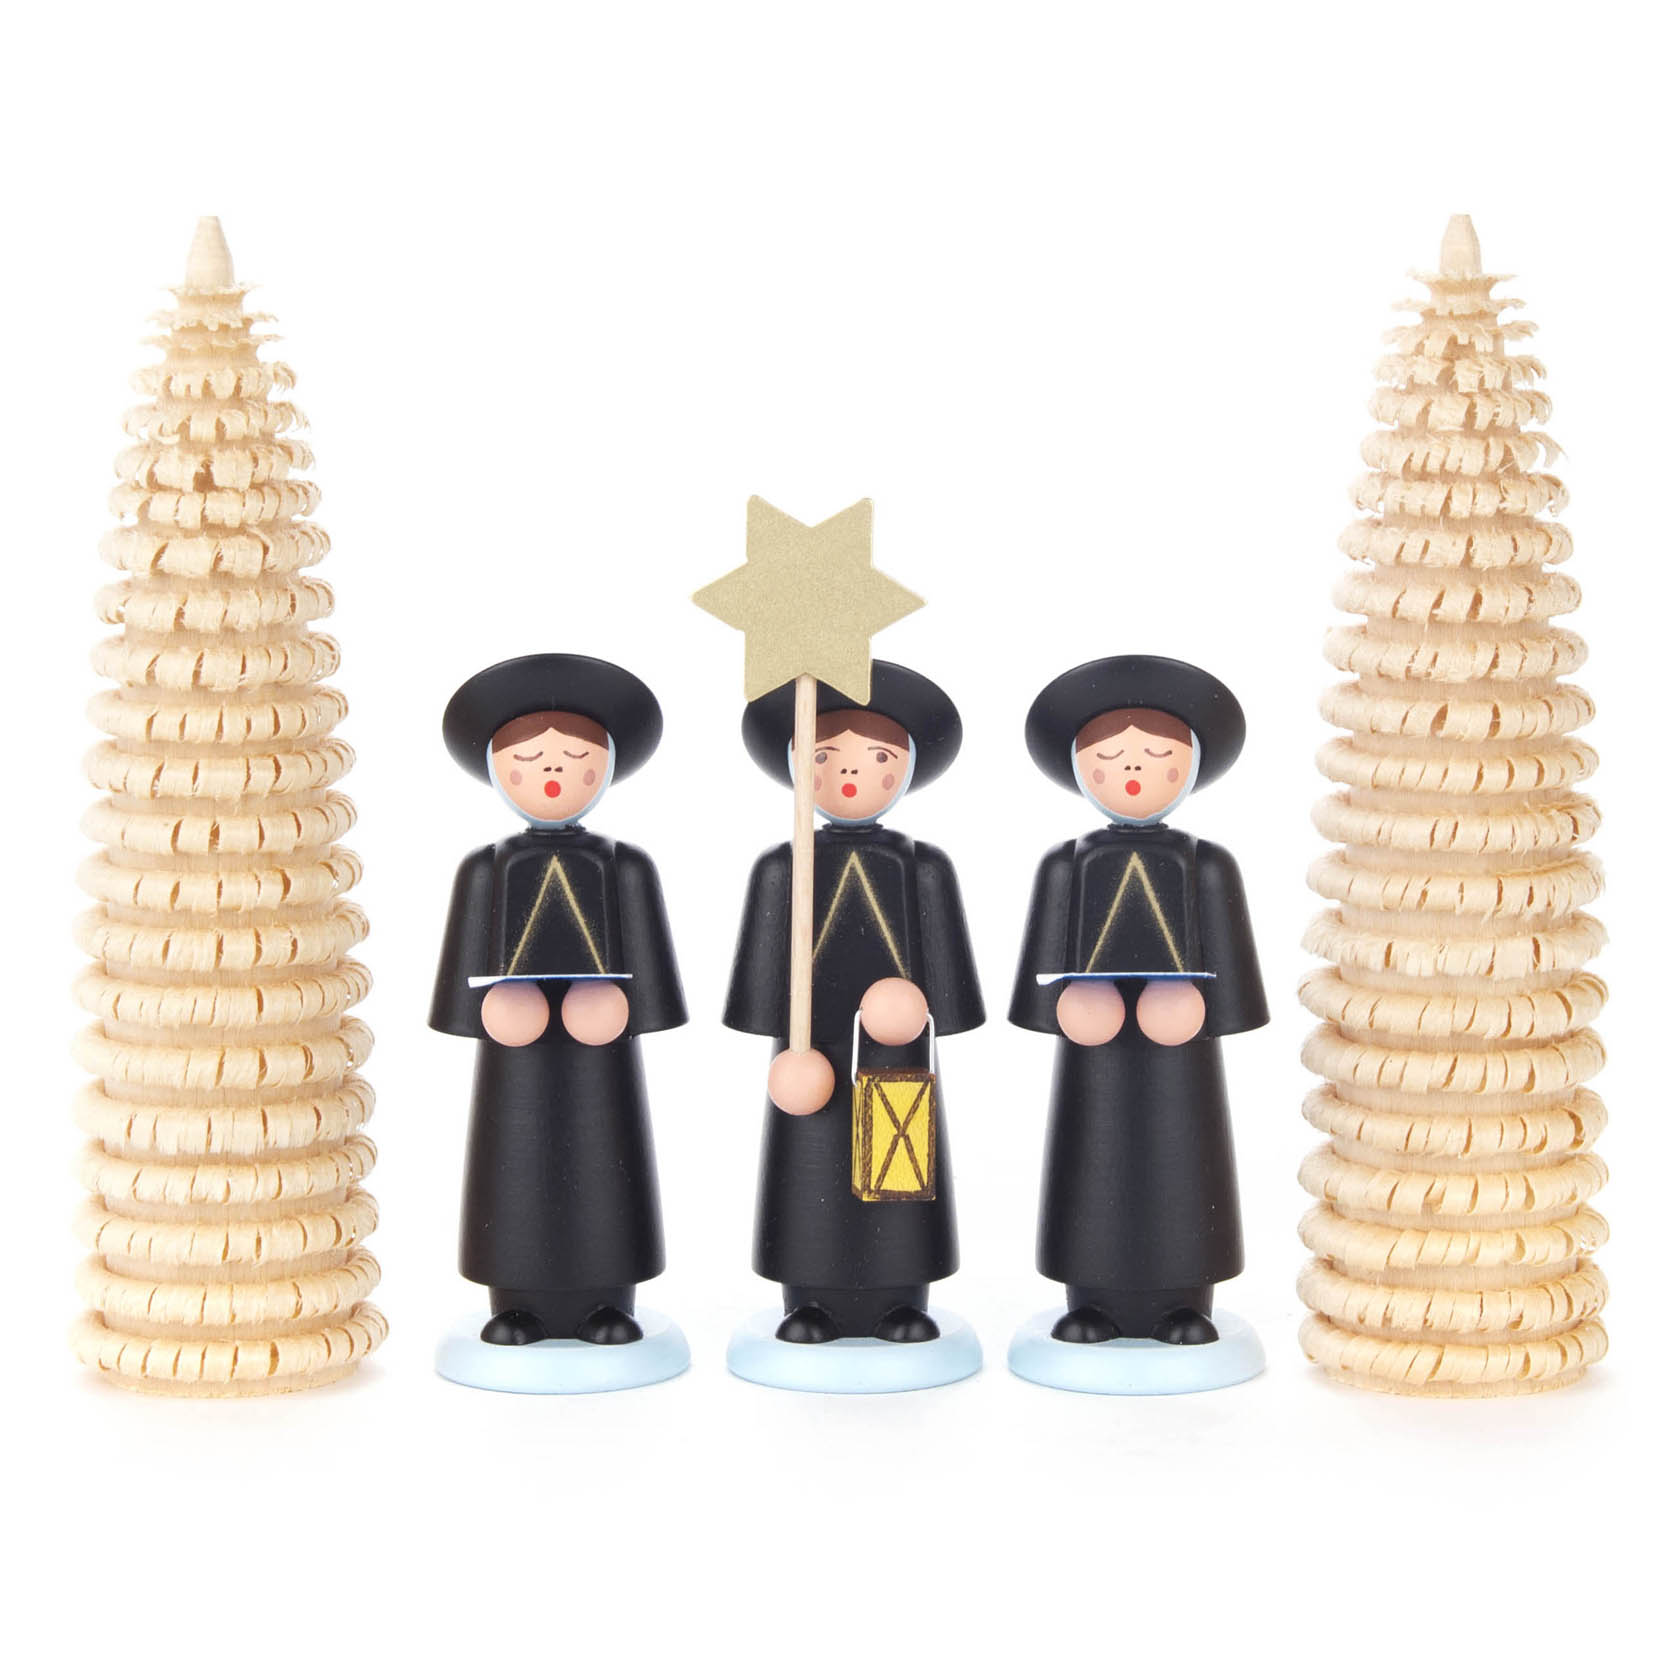 Kurrendefiguren schwarz mit Ringelbäumchen (5) im Dregeno Online Shop günstig kaufen